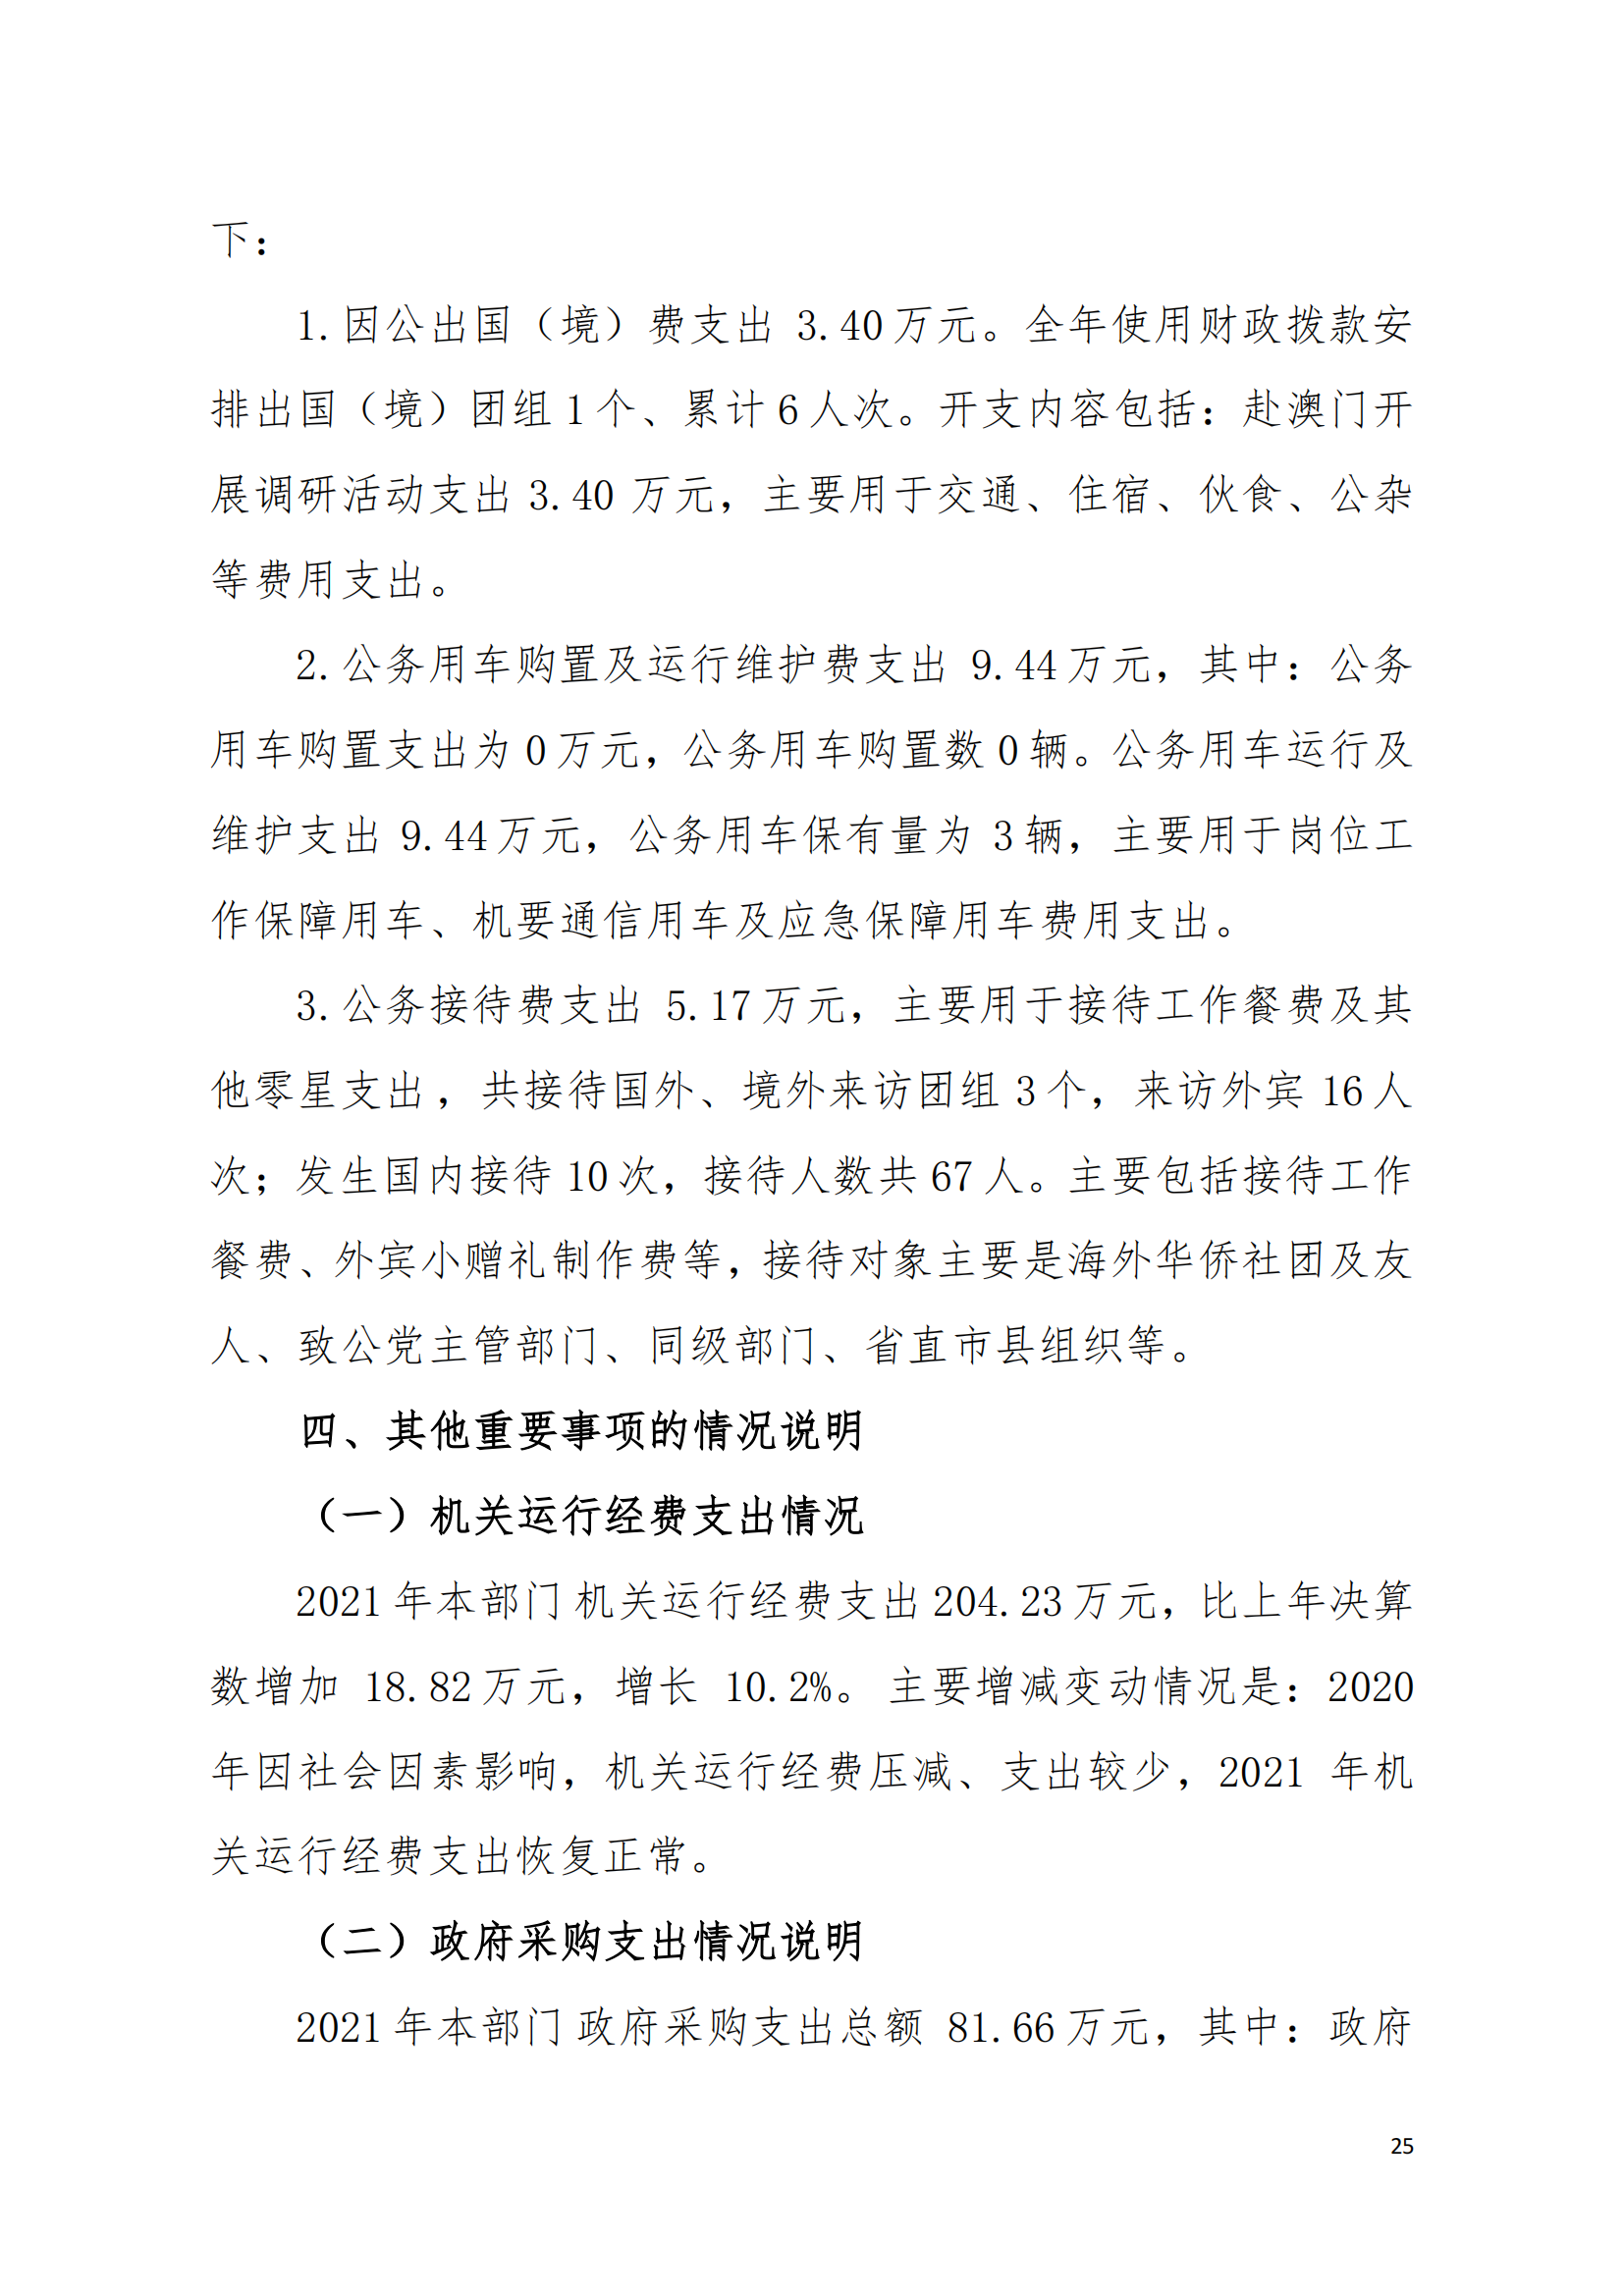 2021年中国致公党广东省委员会部门决算（0706更新）_24.png